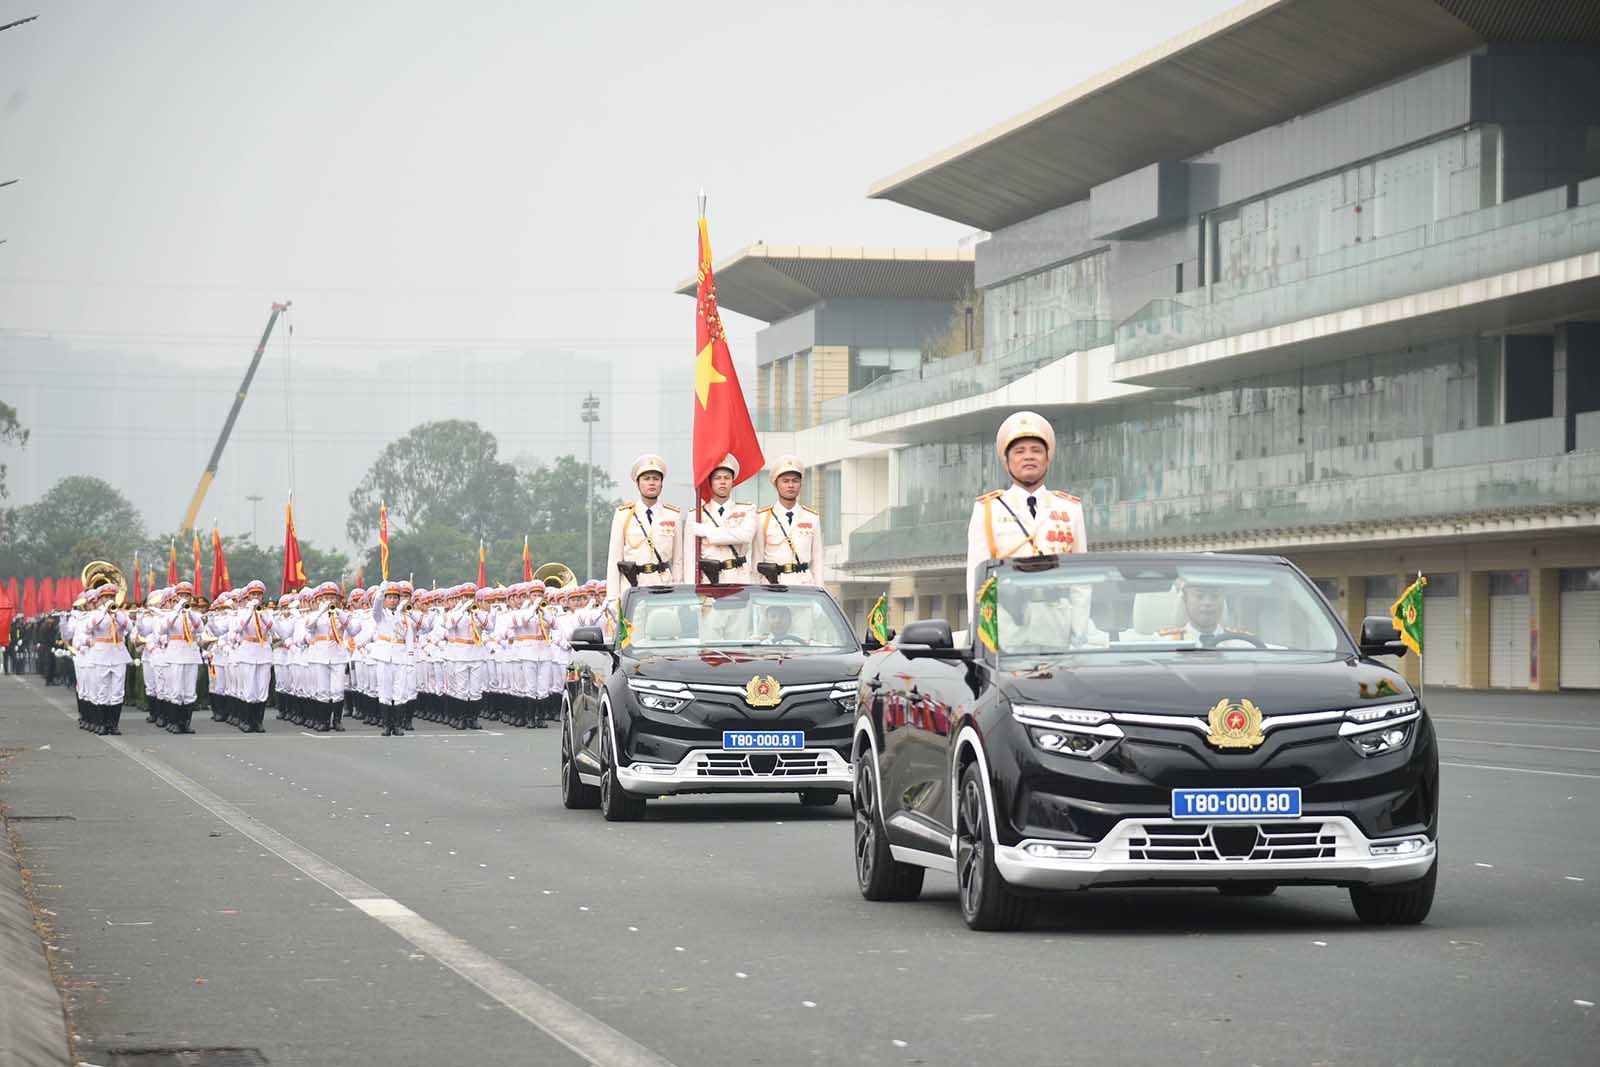 Sáng 14/4, tại Hà Nội, Bộ Tư lệnh Cảnh sát cơ động (Bộ Công an) tổ chức lễ kỷ niệm 50 năm Ngày truyền thống lực lượng Cảnh sát cơ động.